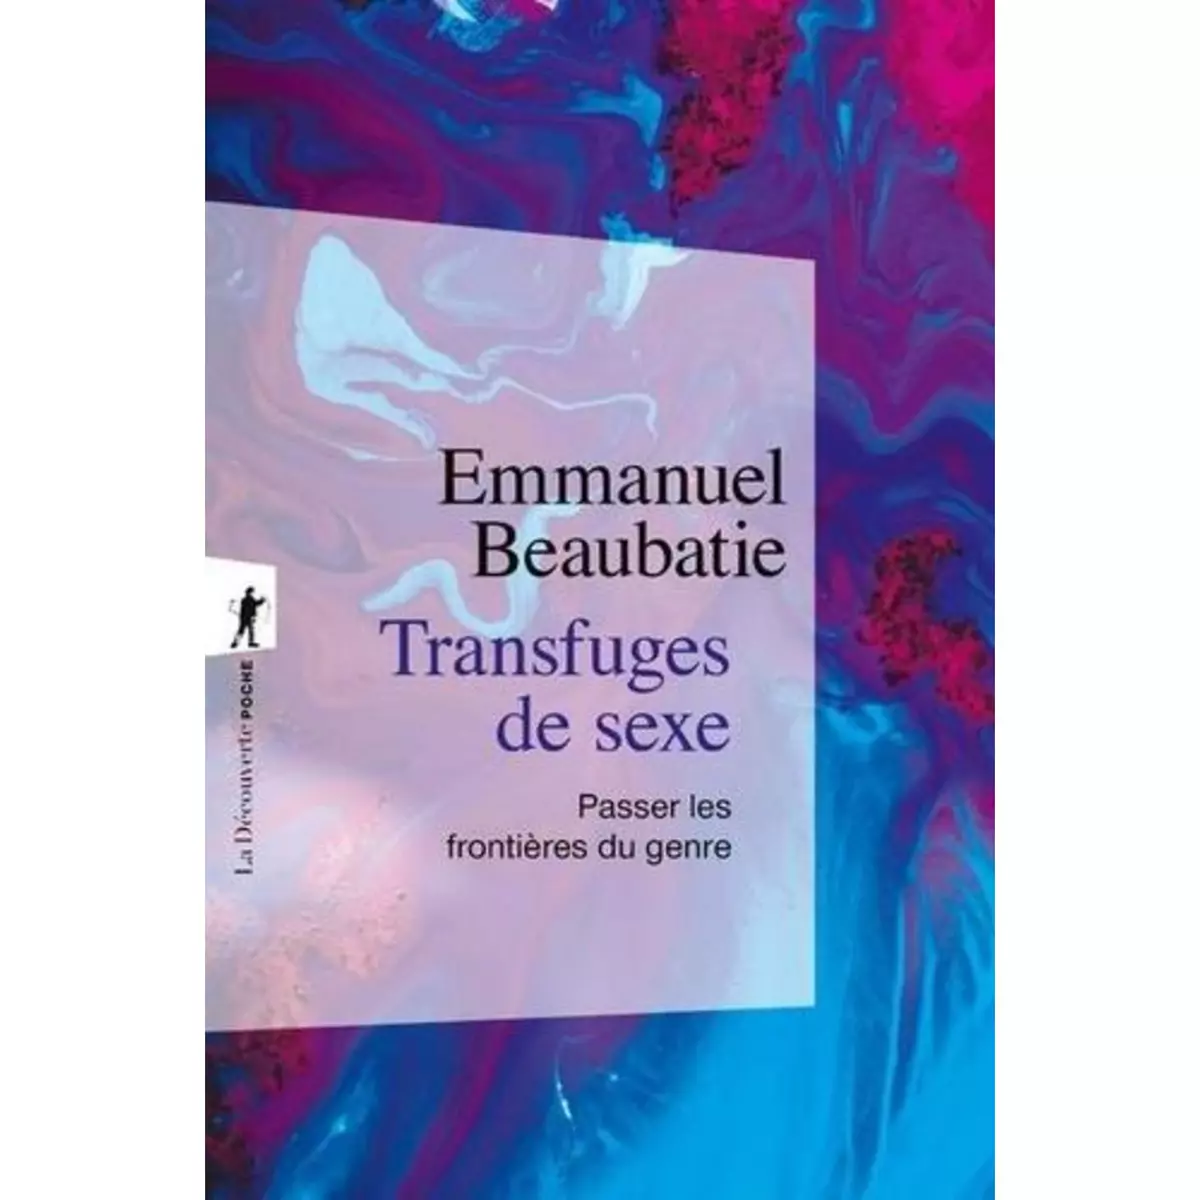  TRANSFUGES DE SEXE. PASSER LES FRONTIERES DU GENRE, Beaubatie Emmanuel